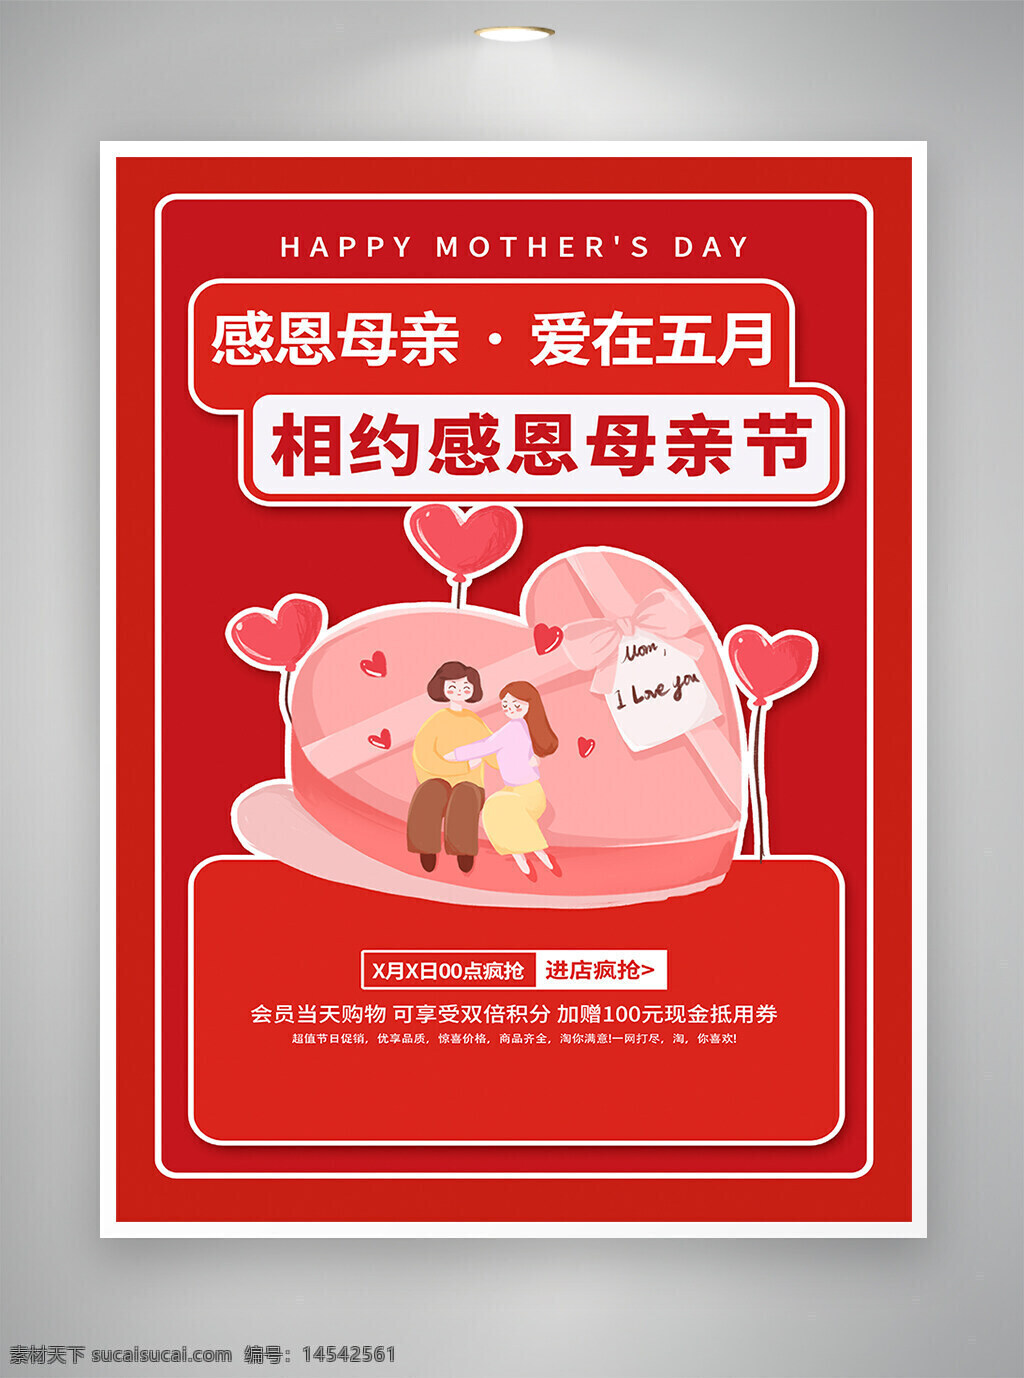 感恩母亲 爱在五月 母亲节 母亲节促销 母亲节宣传 母亲节海报 促销宣传 促销海报 宣传海报 海报